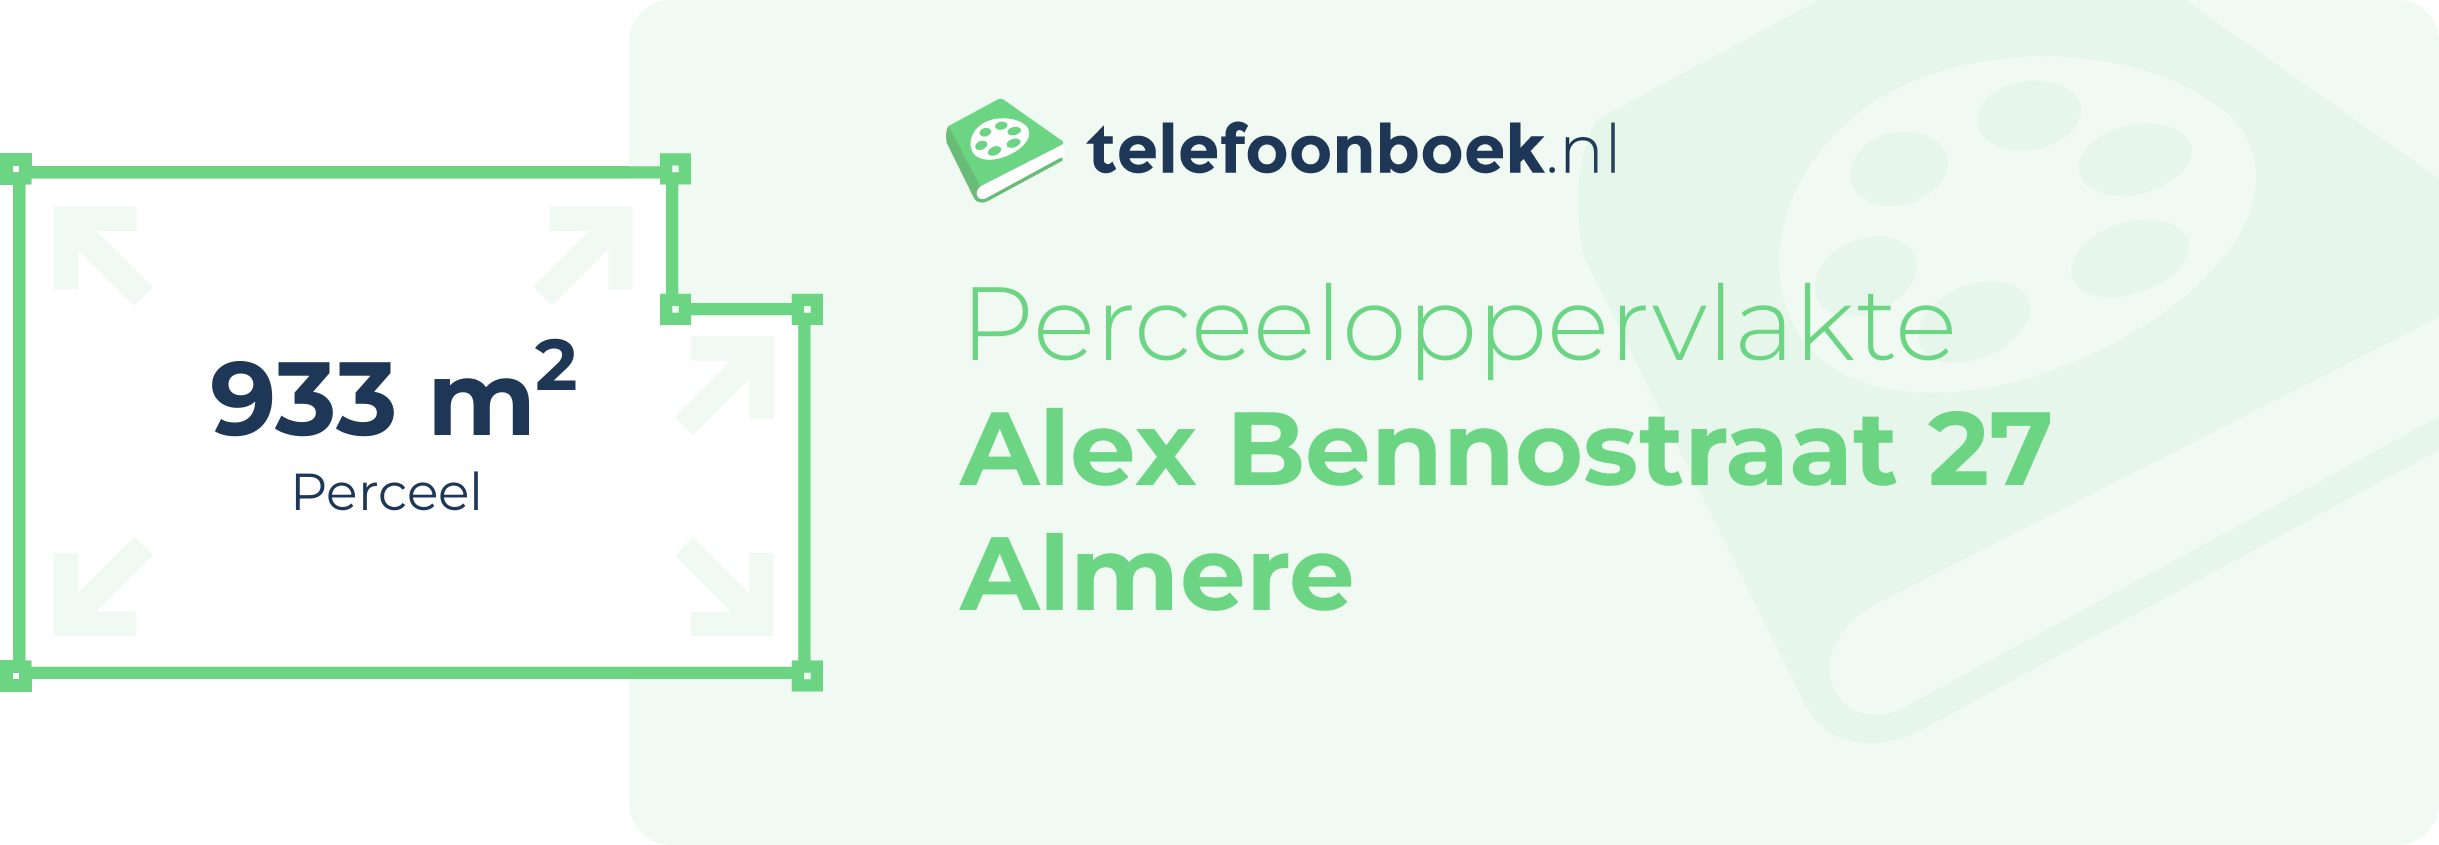 Perceeloppervlakte Alex Bennostraat 27 Almere